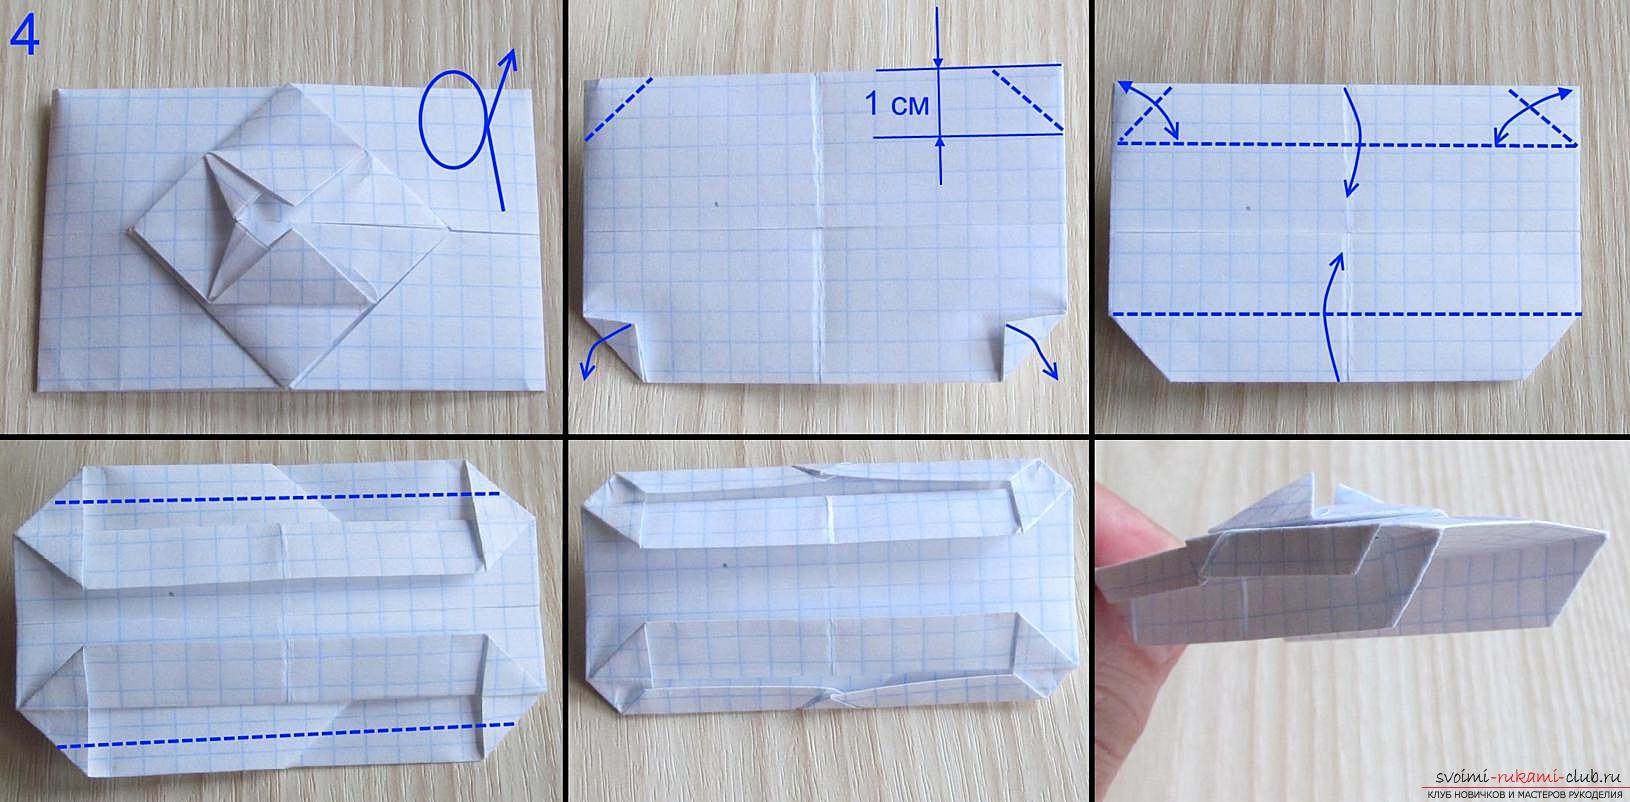 Как сделать танчик при помощи схемы оригами из бумаги? Схема сборки и урок